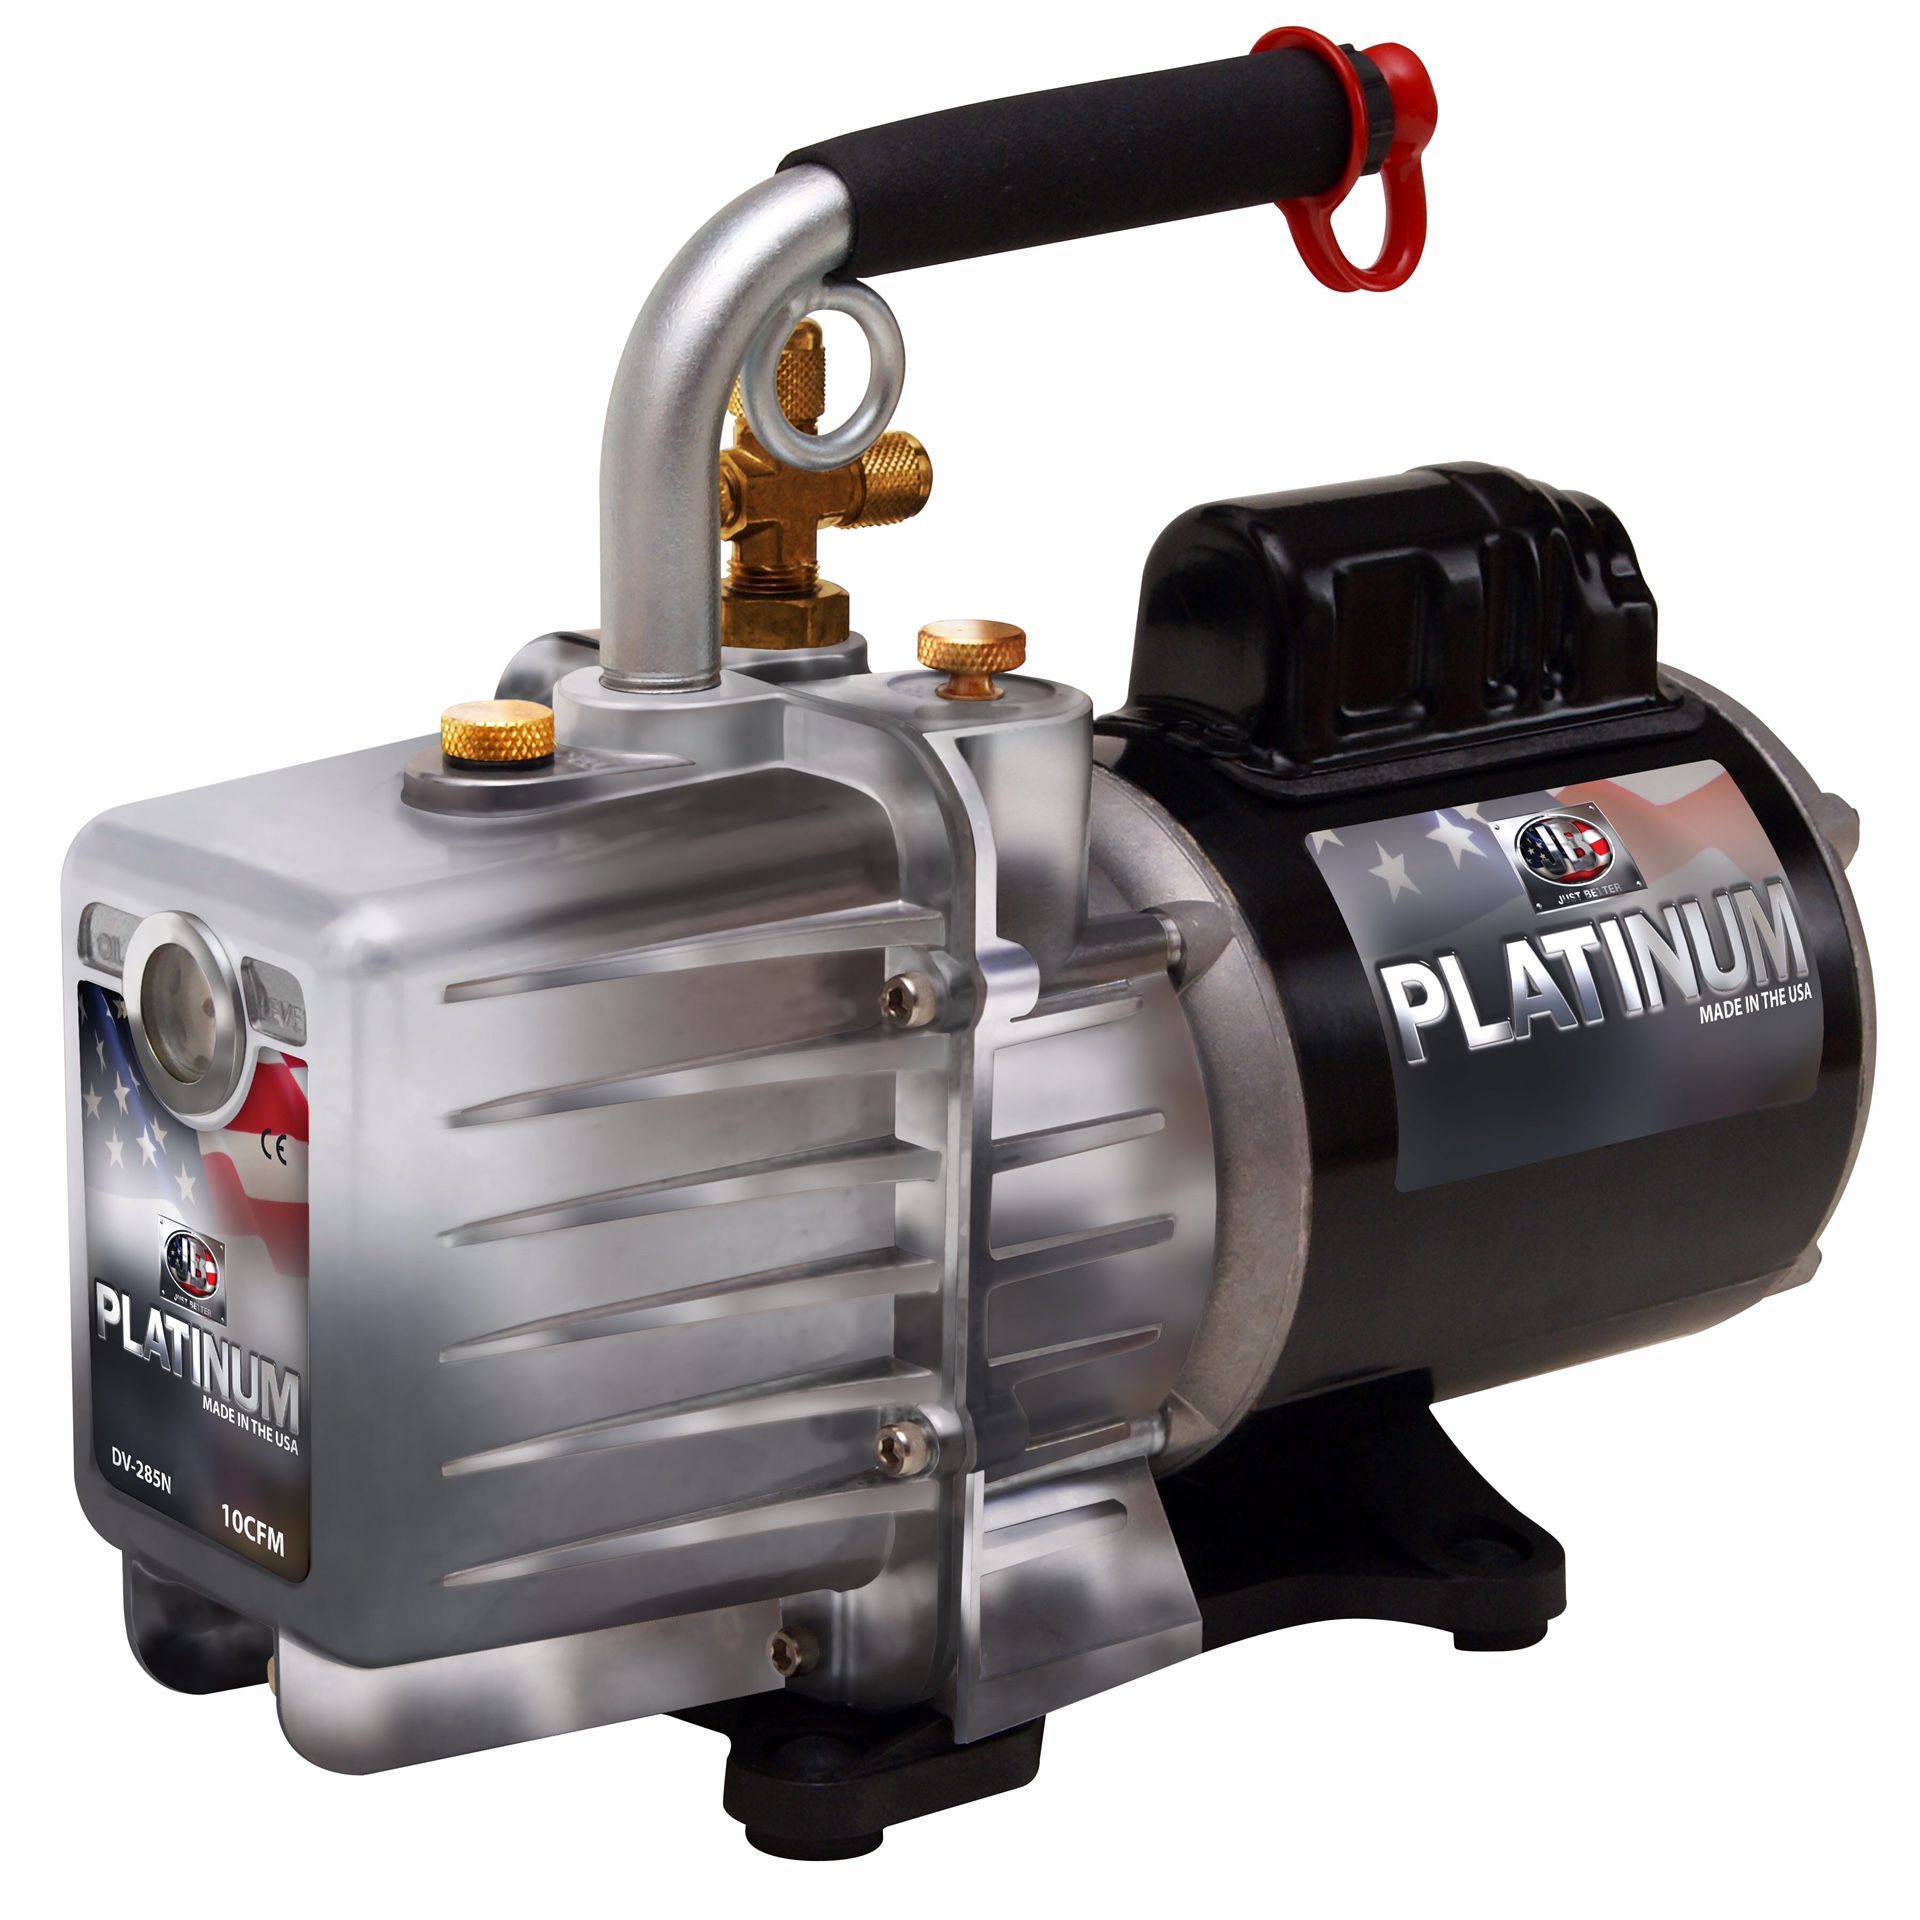 JB Platinum 10cfm 2-stage vacuum pump